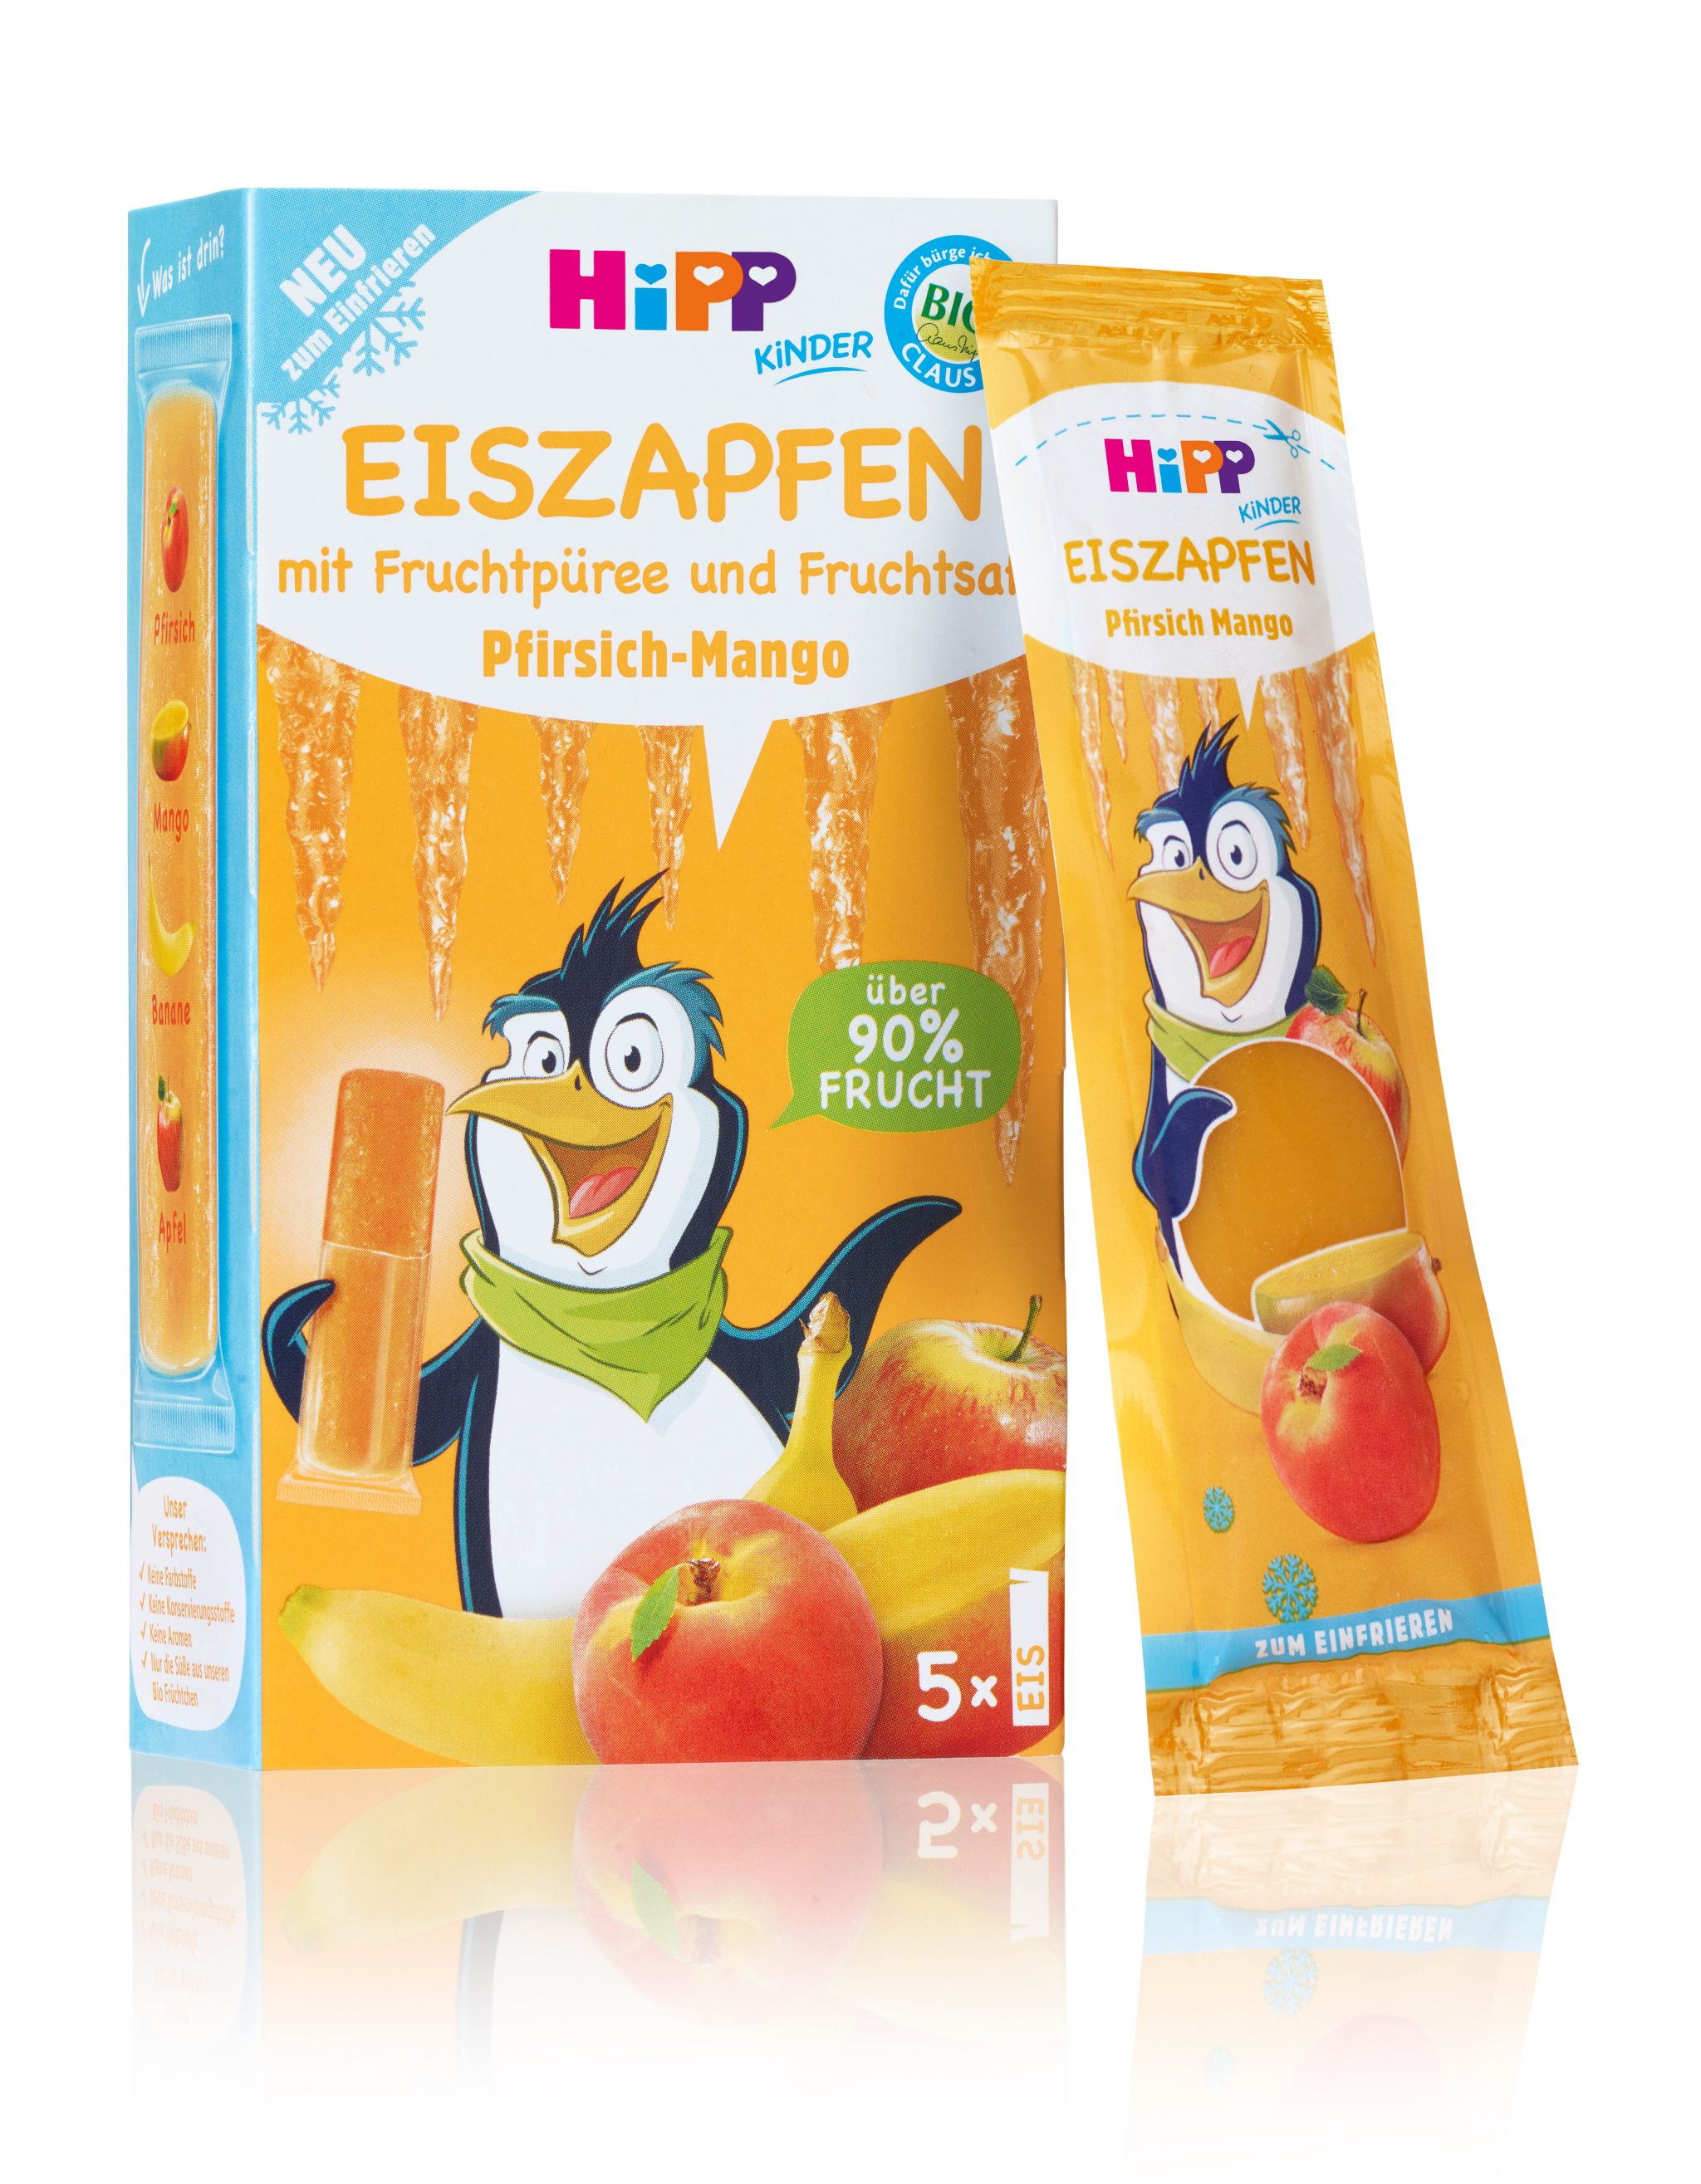 HiPP-Eiszapfen-Pfirsich-Mango